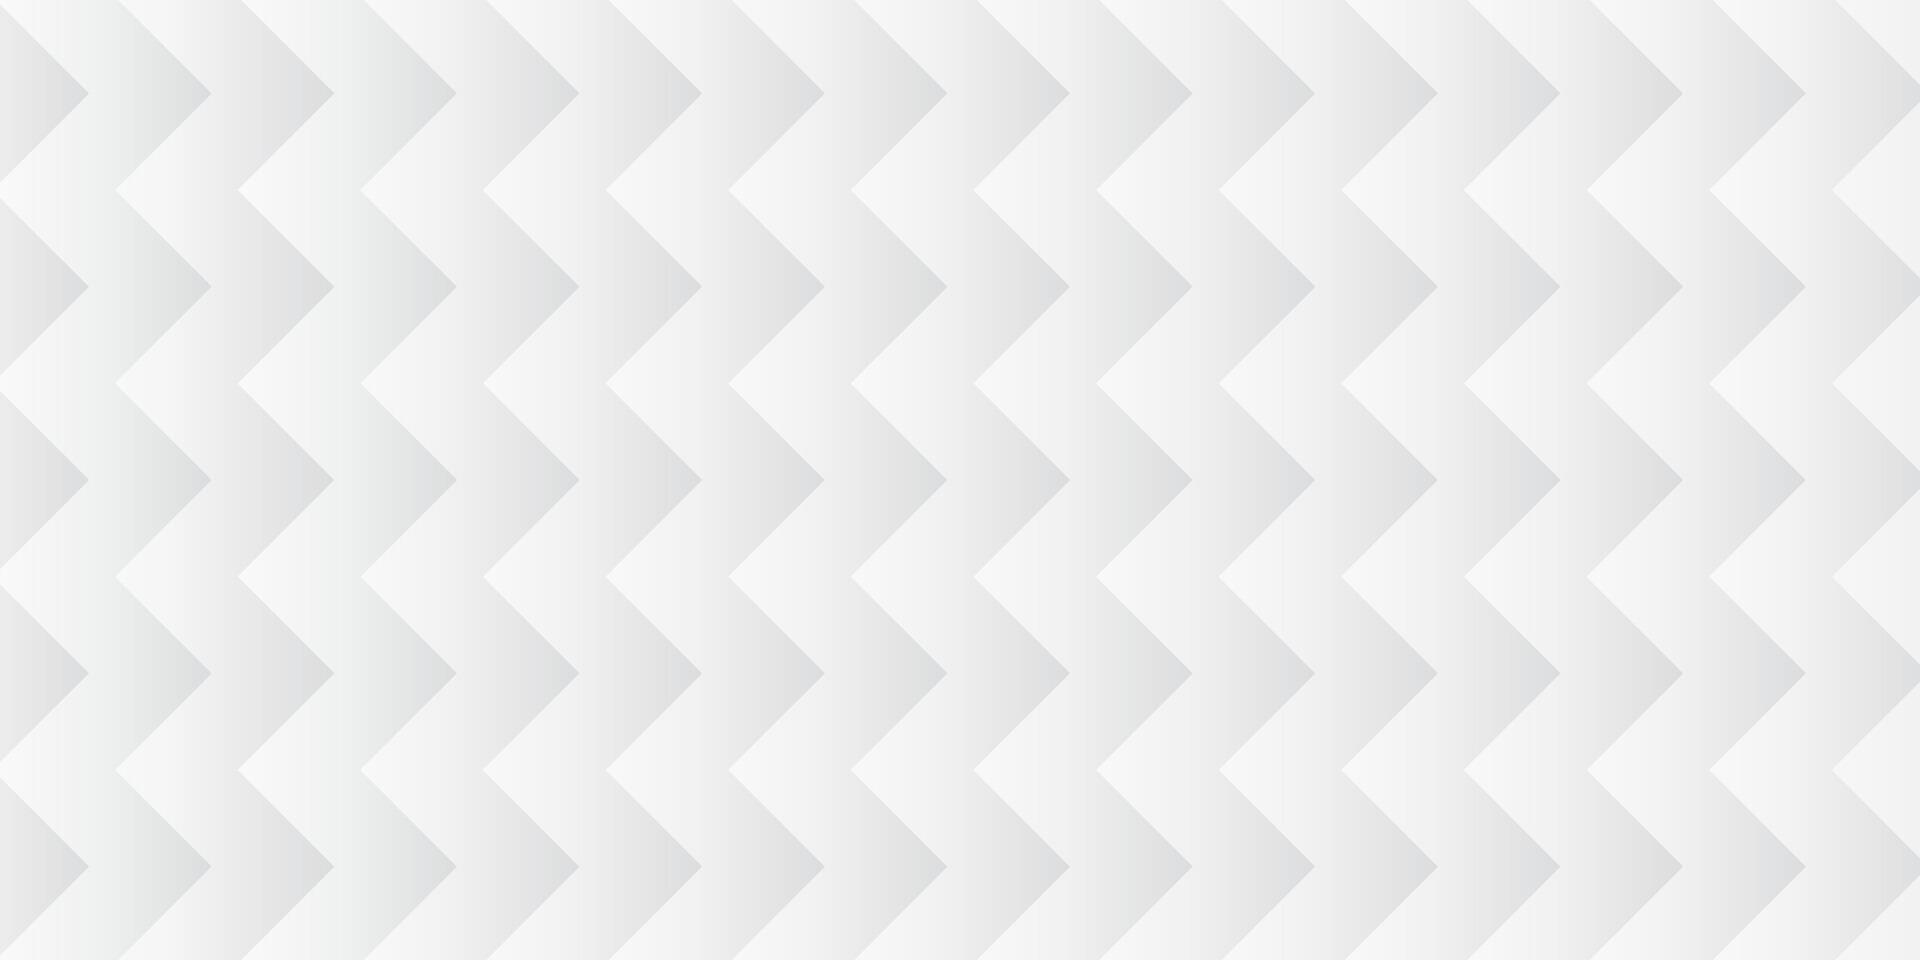 blanco y gris minimalista antecedentes con zigzag líneas, eps 10 vector